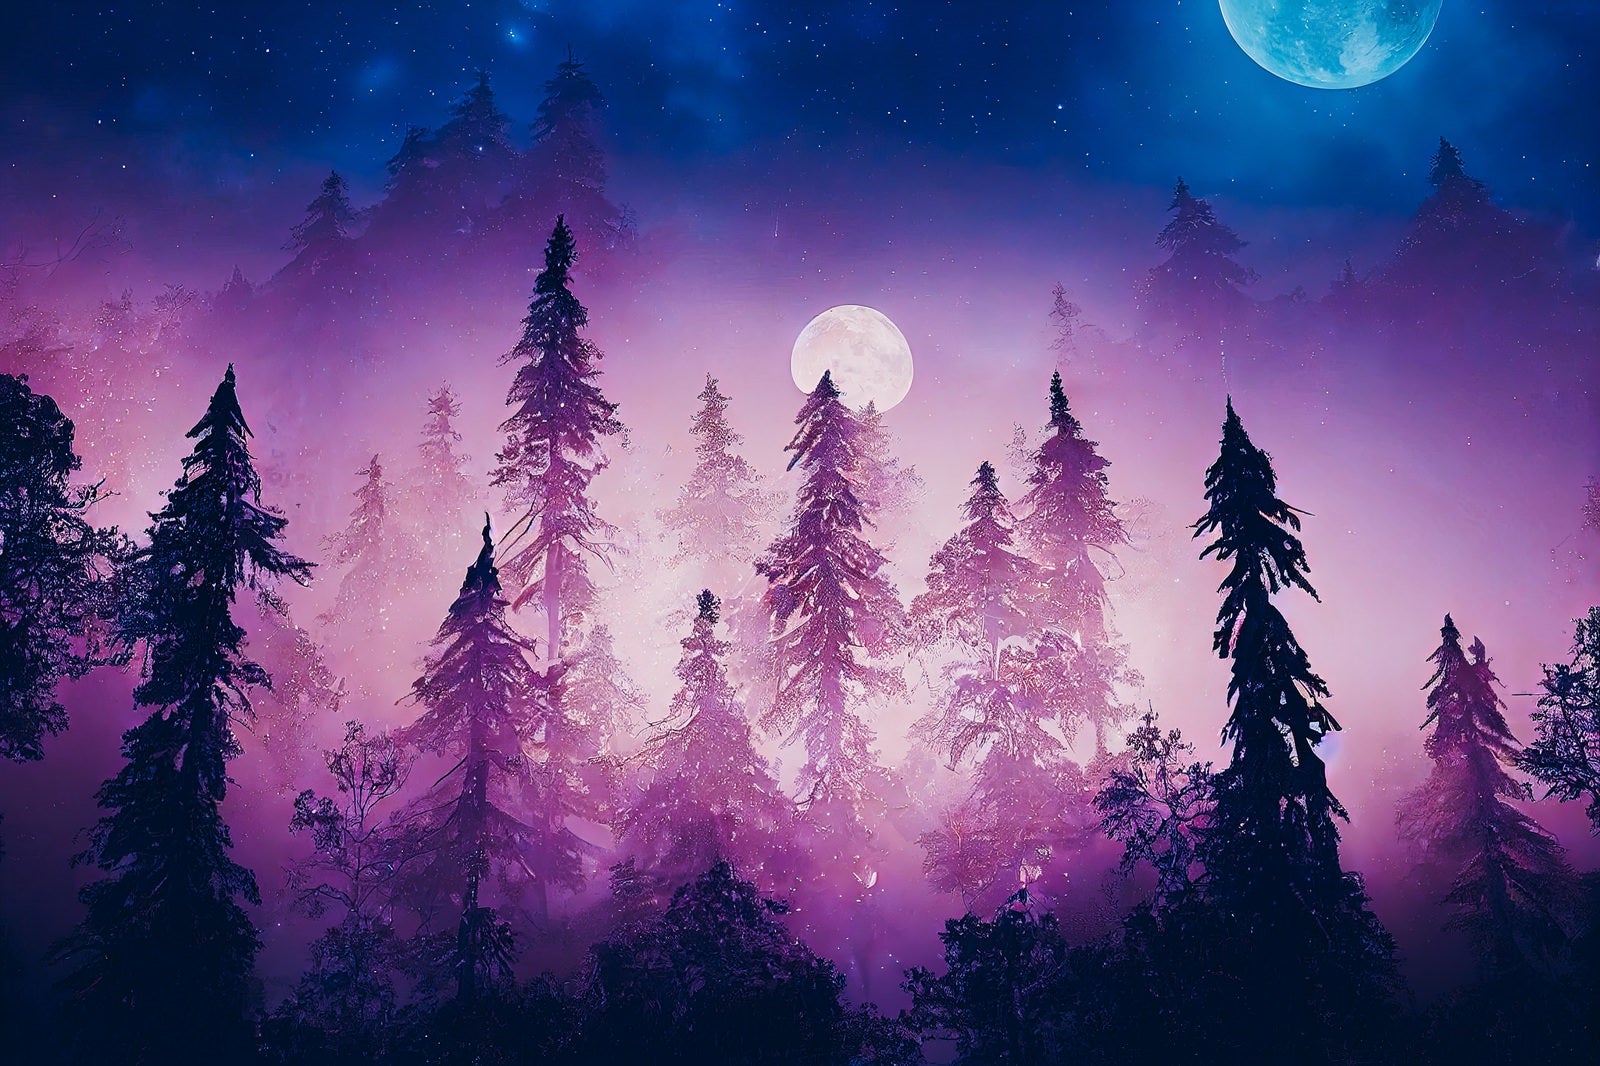 「二つの月と夜の森」の写真